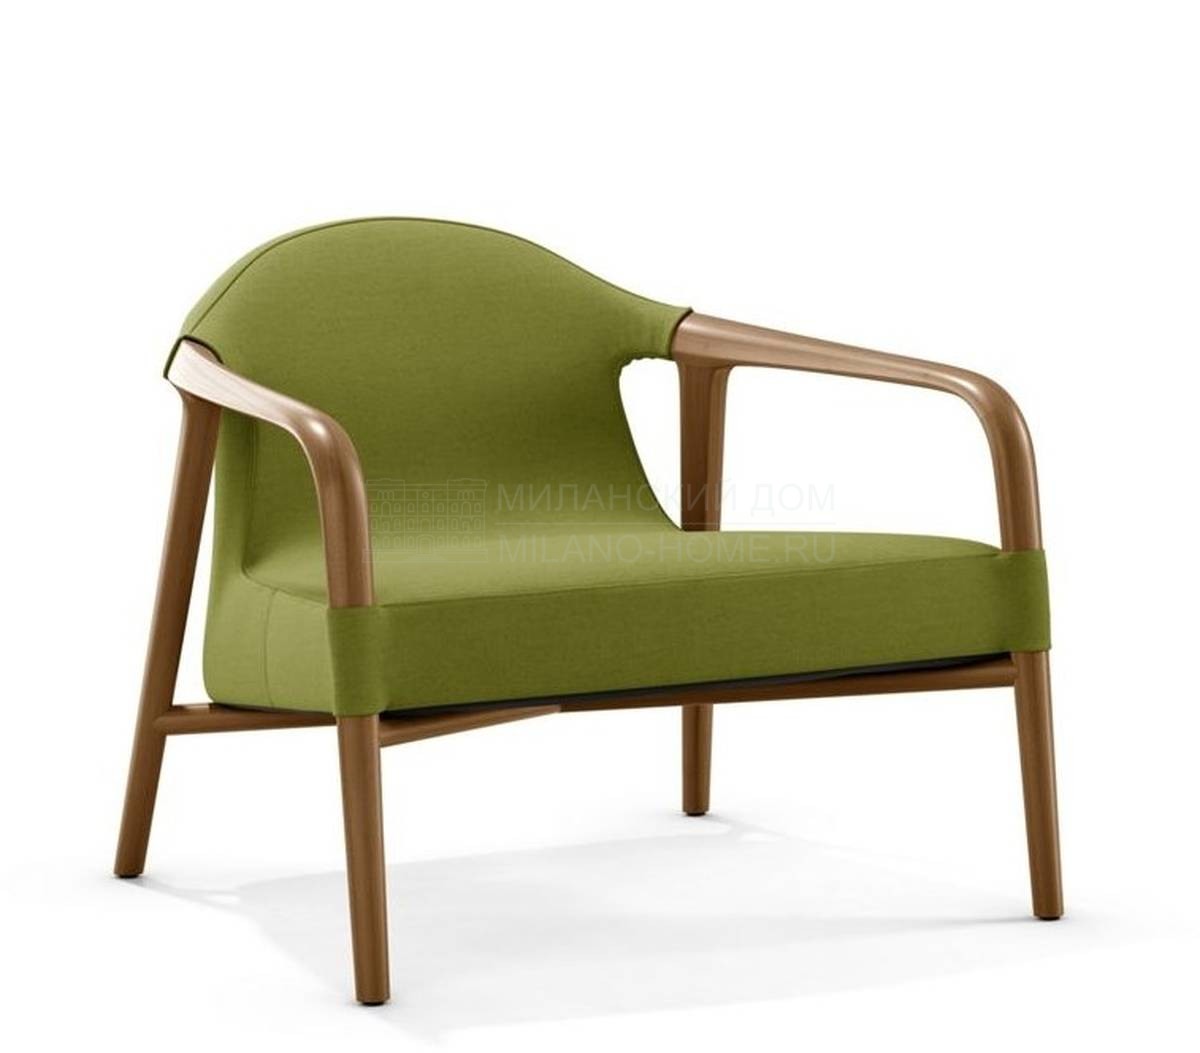 Кресло Tempus lounge armchair из Франции фабрики ROCHE BOBOIS